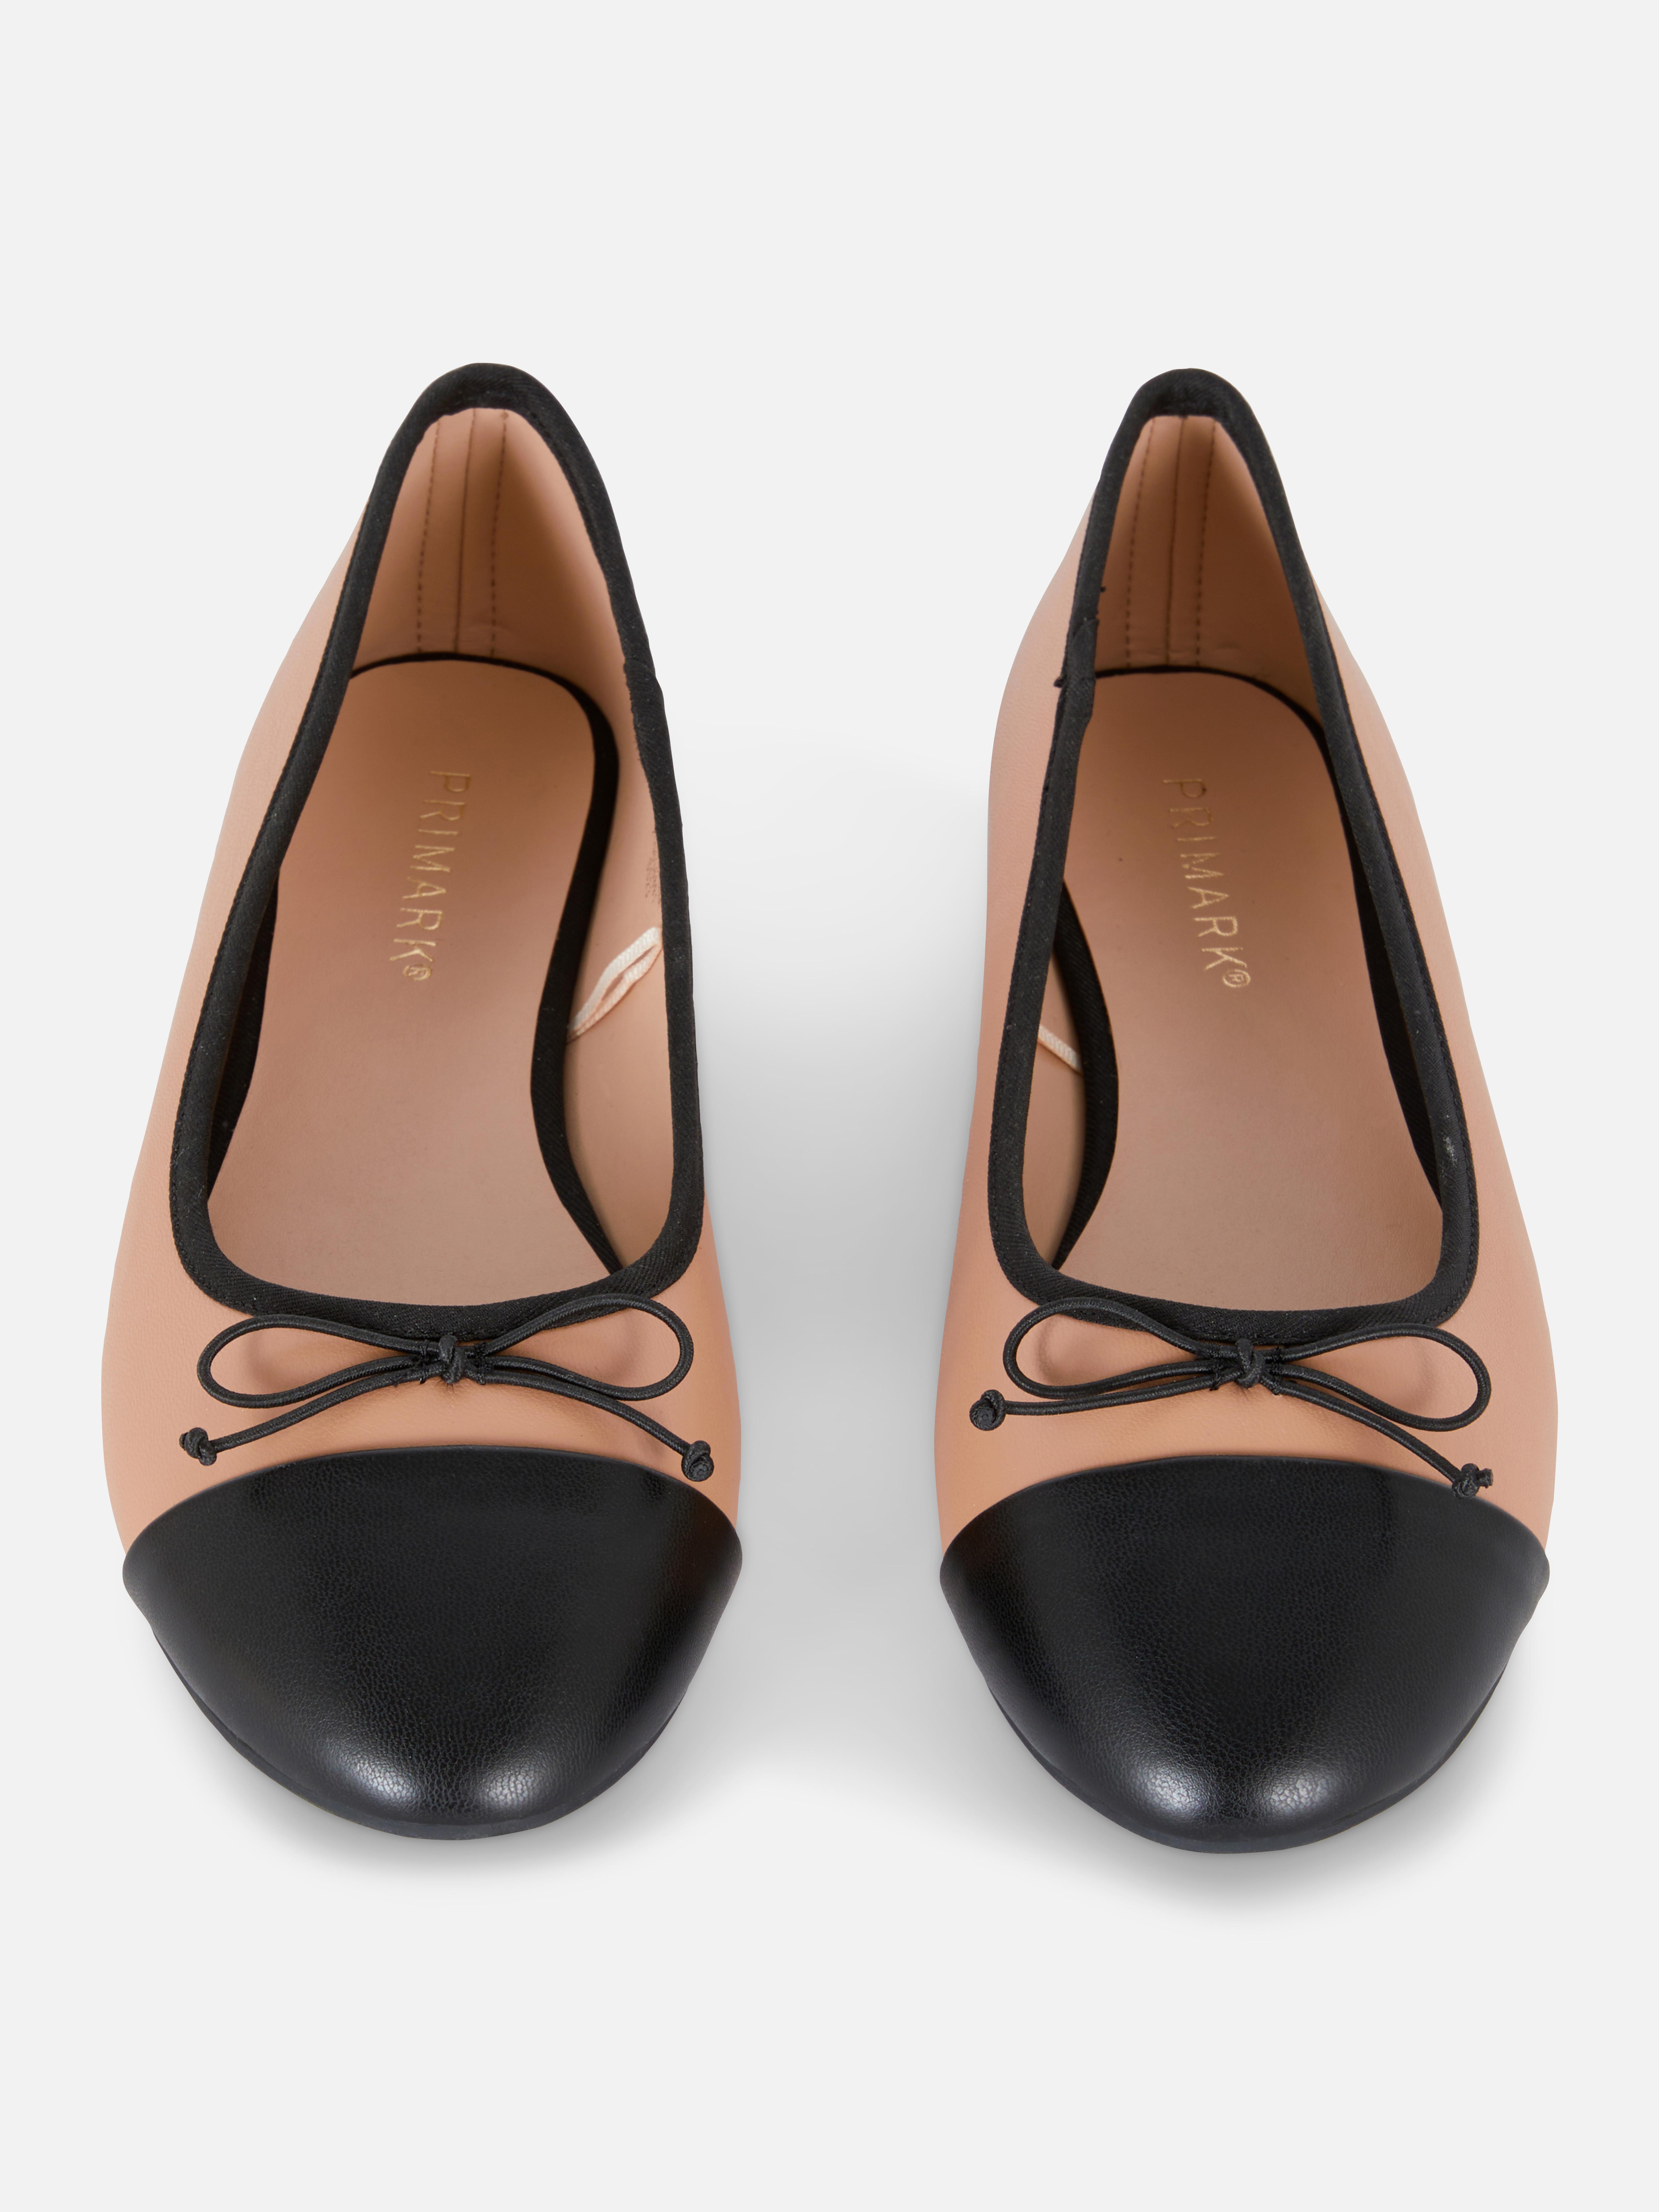 Zapatos y botas para mujer | Encuentra lo último en calzado de mujer | Primark